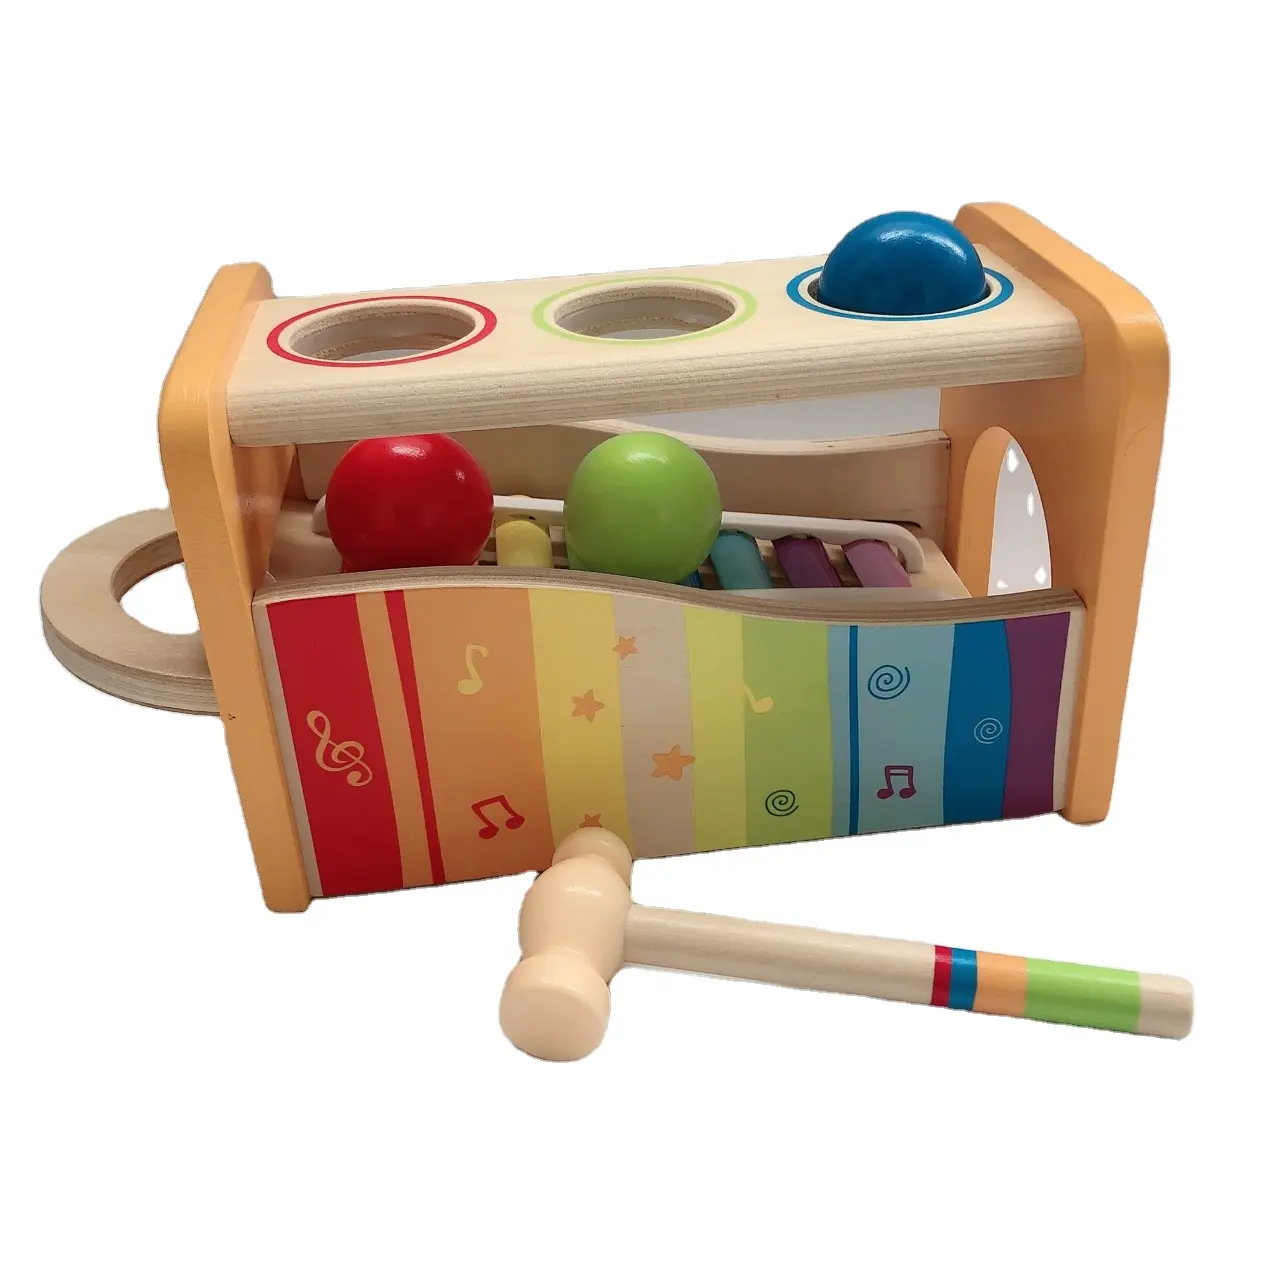 ของเล่นระนาดมอนเตสซอรี่สำหรับเด็ก,ของเล่นเพื่อการศึกษาทำจากไม้แปดโน้ตสไตล์ระนาดของเล่นสนุกๆสำหรับเด็กเล่นดนตรี